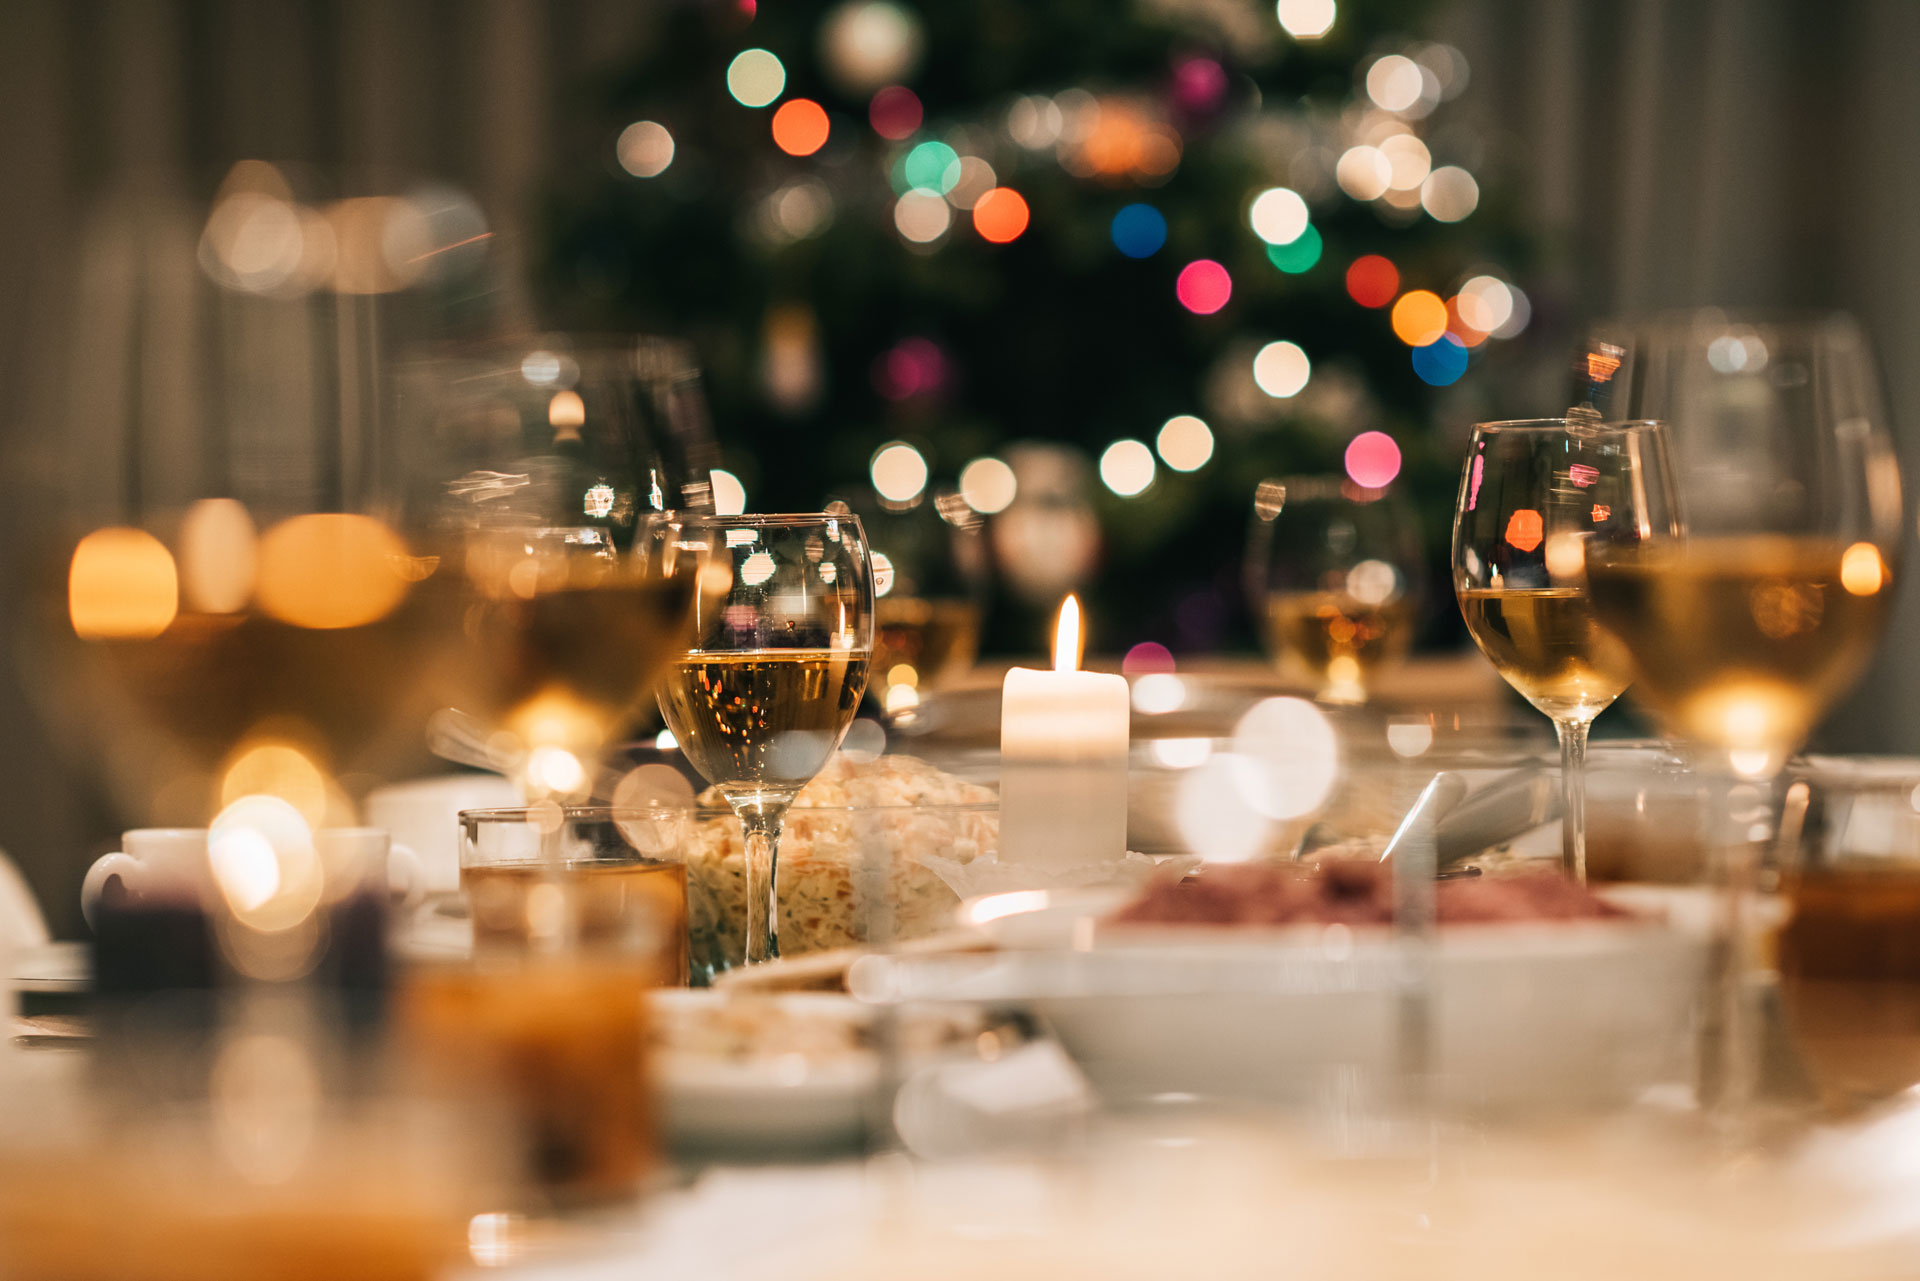 The Grand-York Christmas Dinner